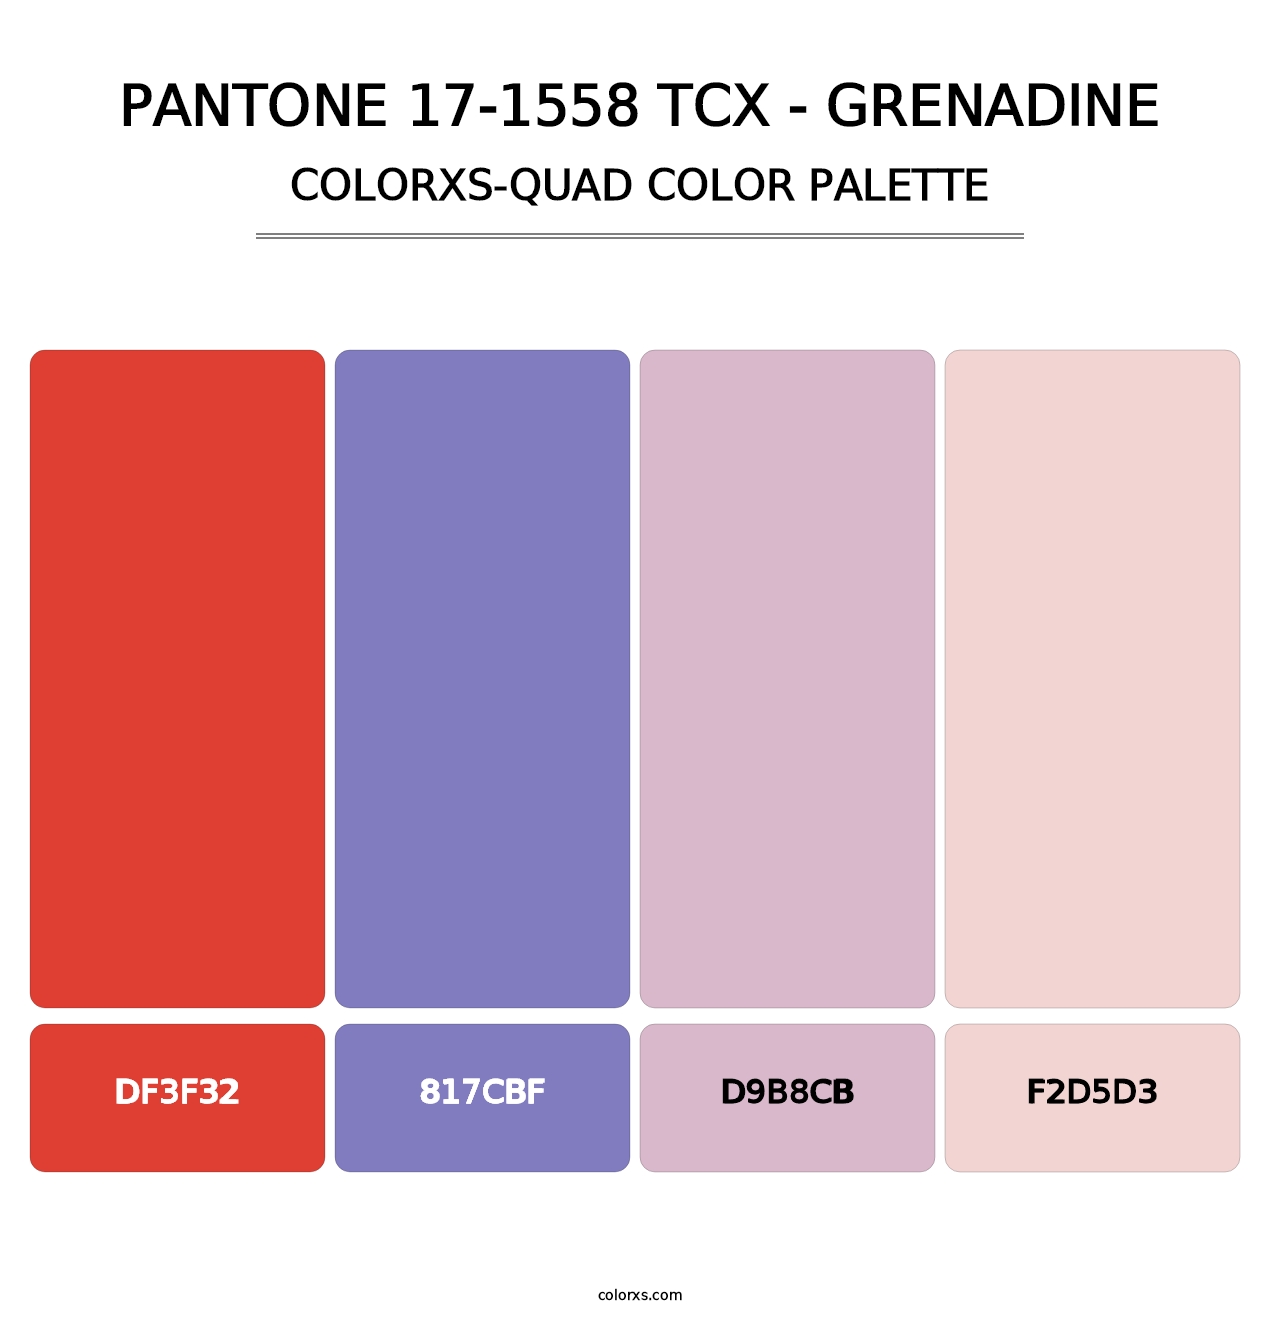 PANTONE 17-1558 TCX - Grenadine - Colorxs Quad Palette